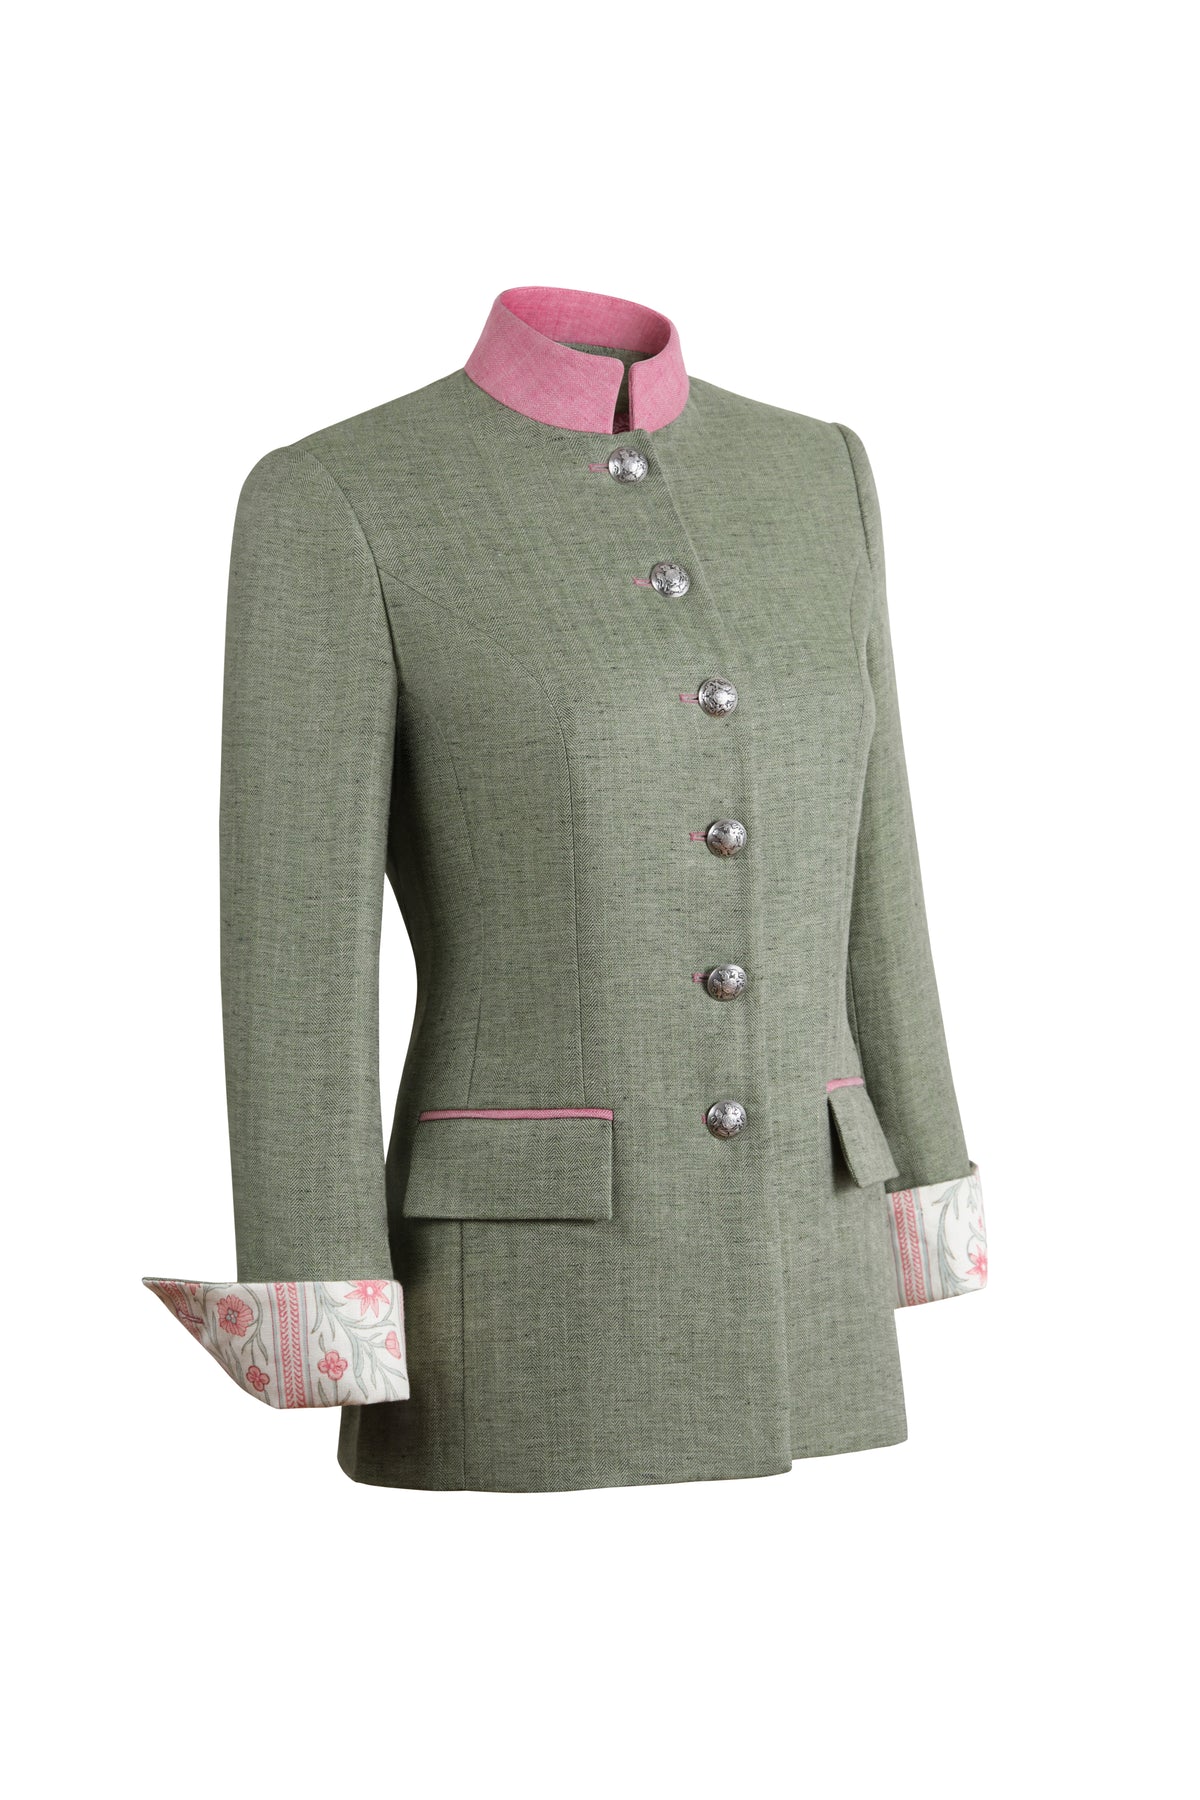 Camille Tale 2.0 Jacket in Green Linen